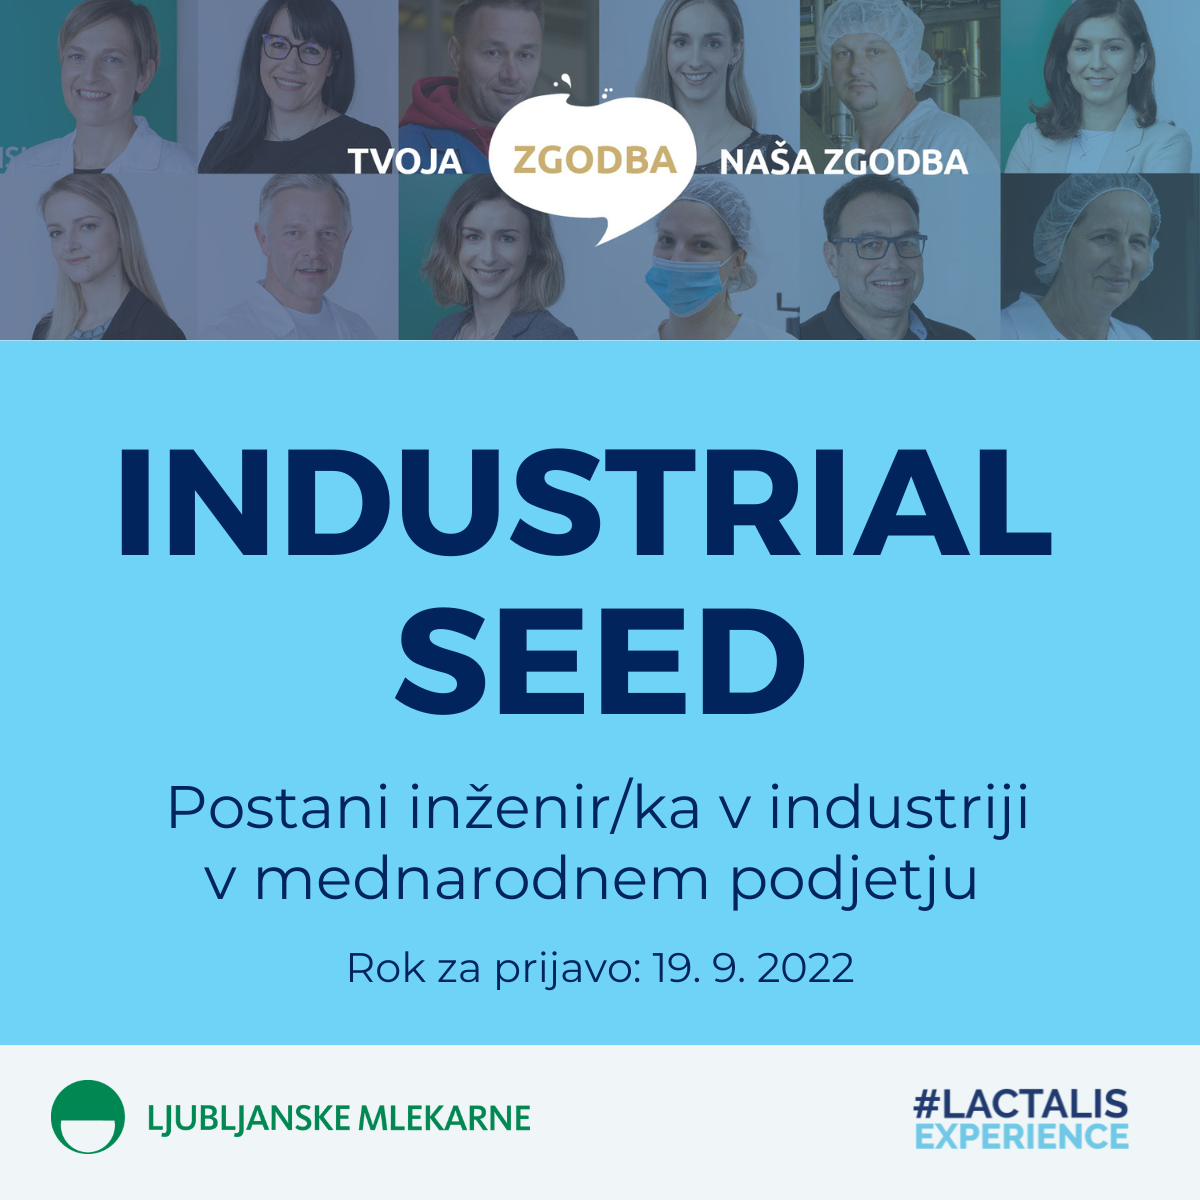 Industrial Seed – Ljubljanske mlekarne